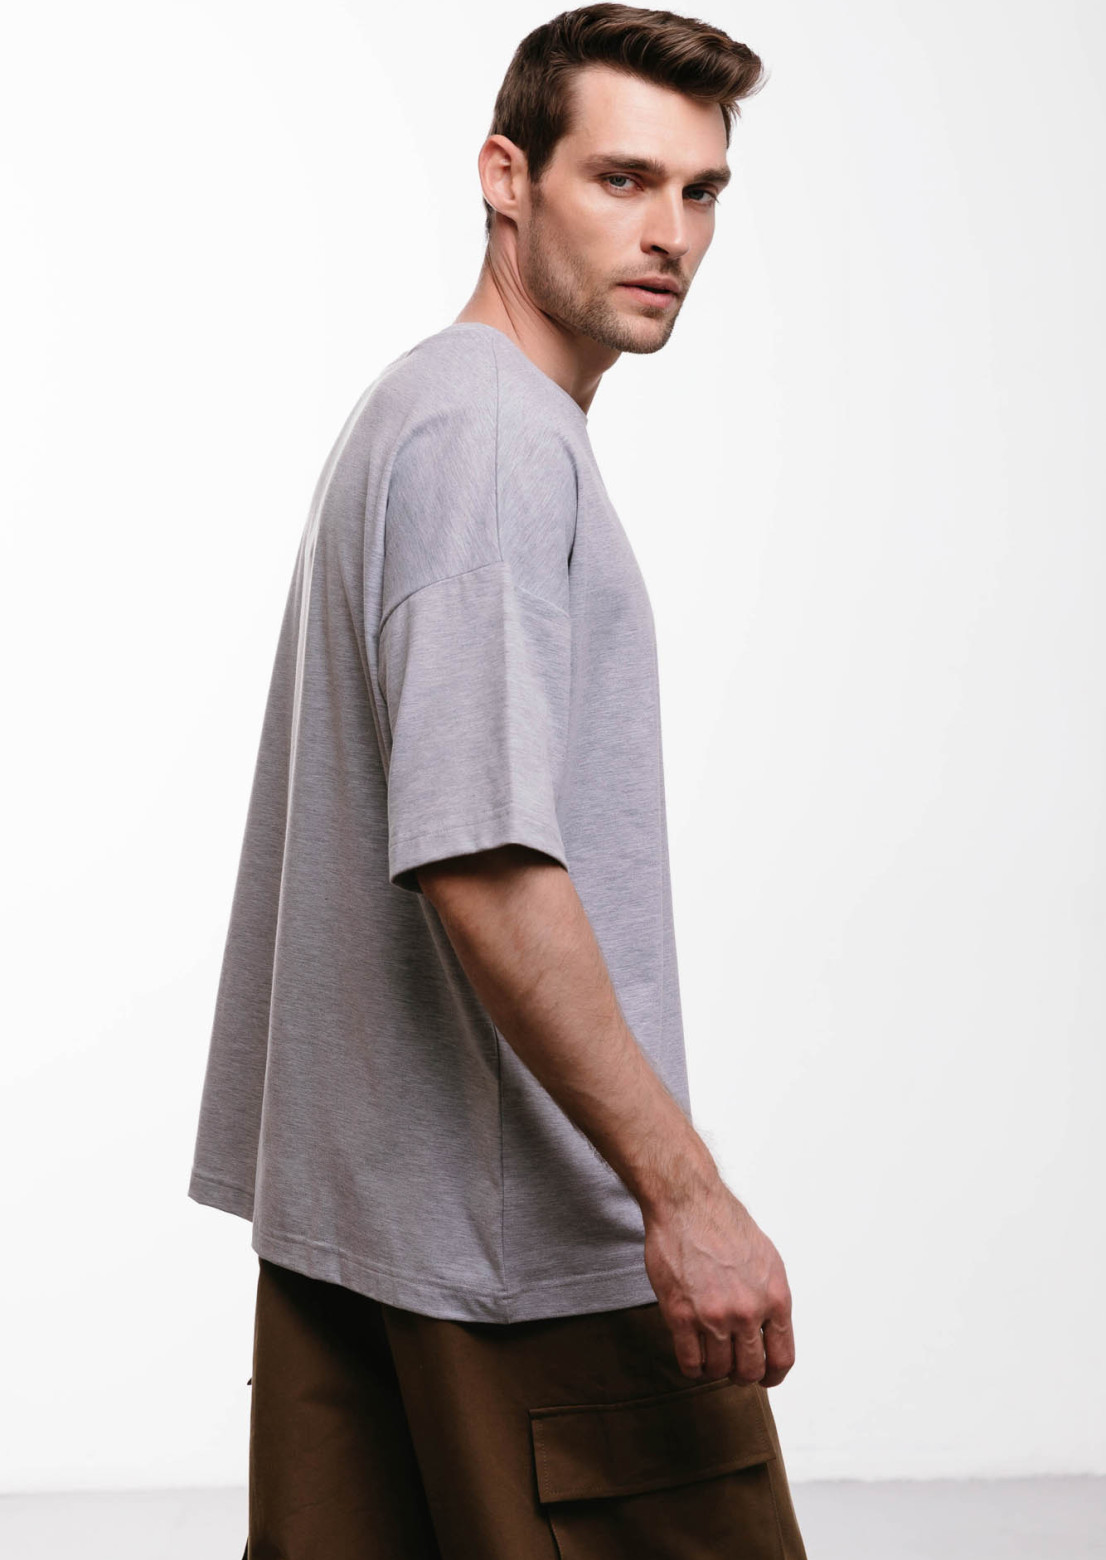 Grey melange color mega oversize unisex "100% human" T-shirt 